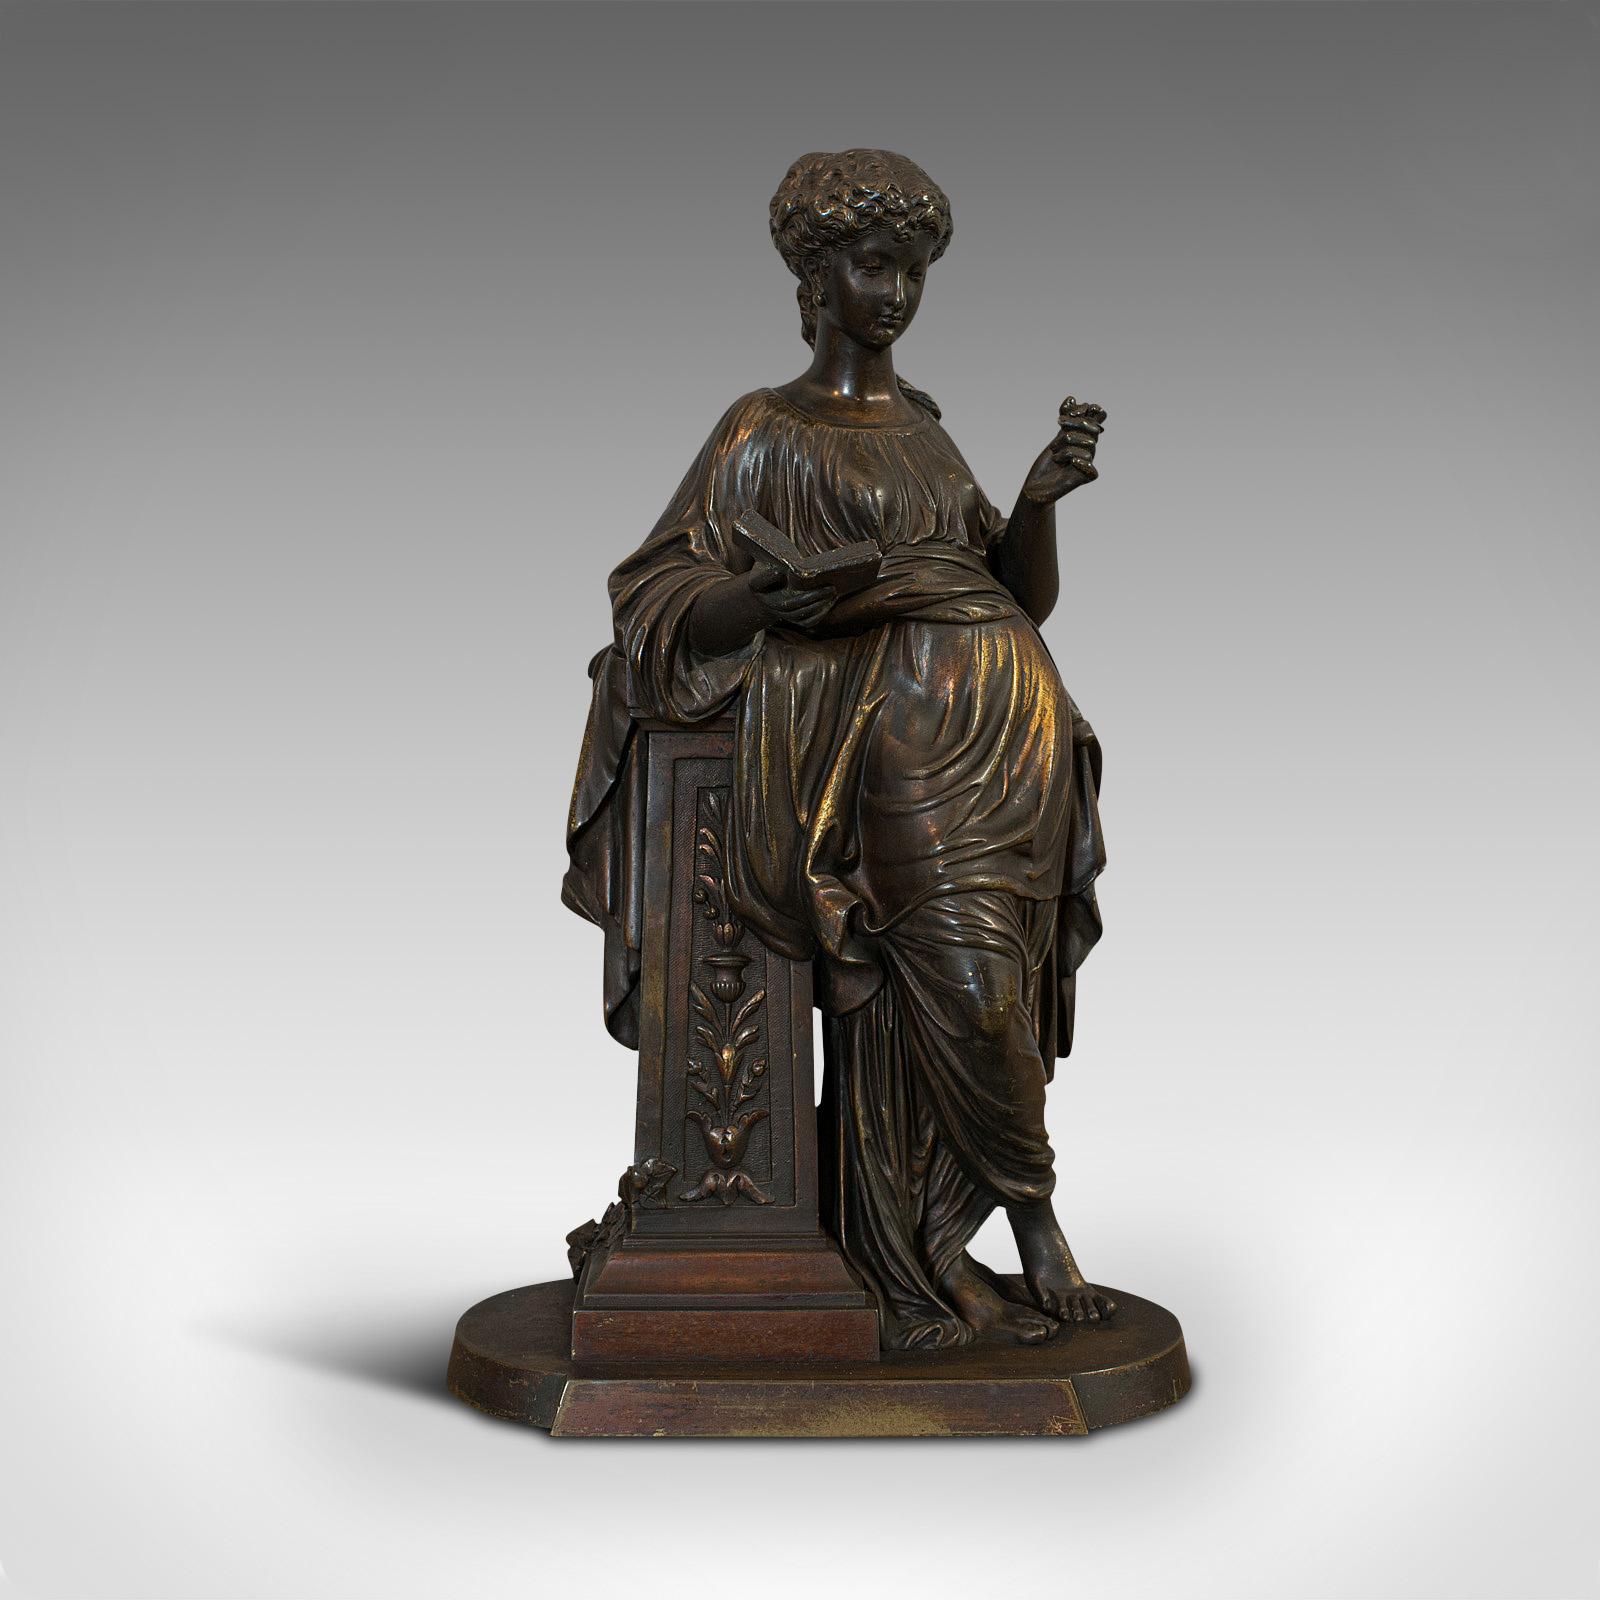 Il s'agit d'une figurine ancienne en bronze. Statue féminine française de goût Art nouveau à la manière d'Hippolyte François Moreau, datant du début du XXe siècle, vers 1920.

Sculpture d'une élégance décontractée
Affiche une patine vieillie